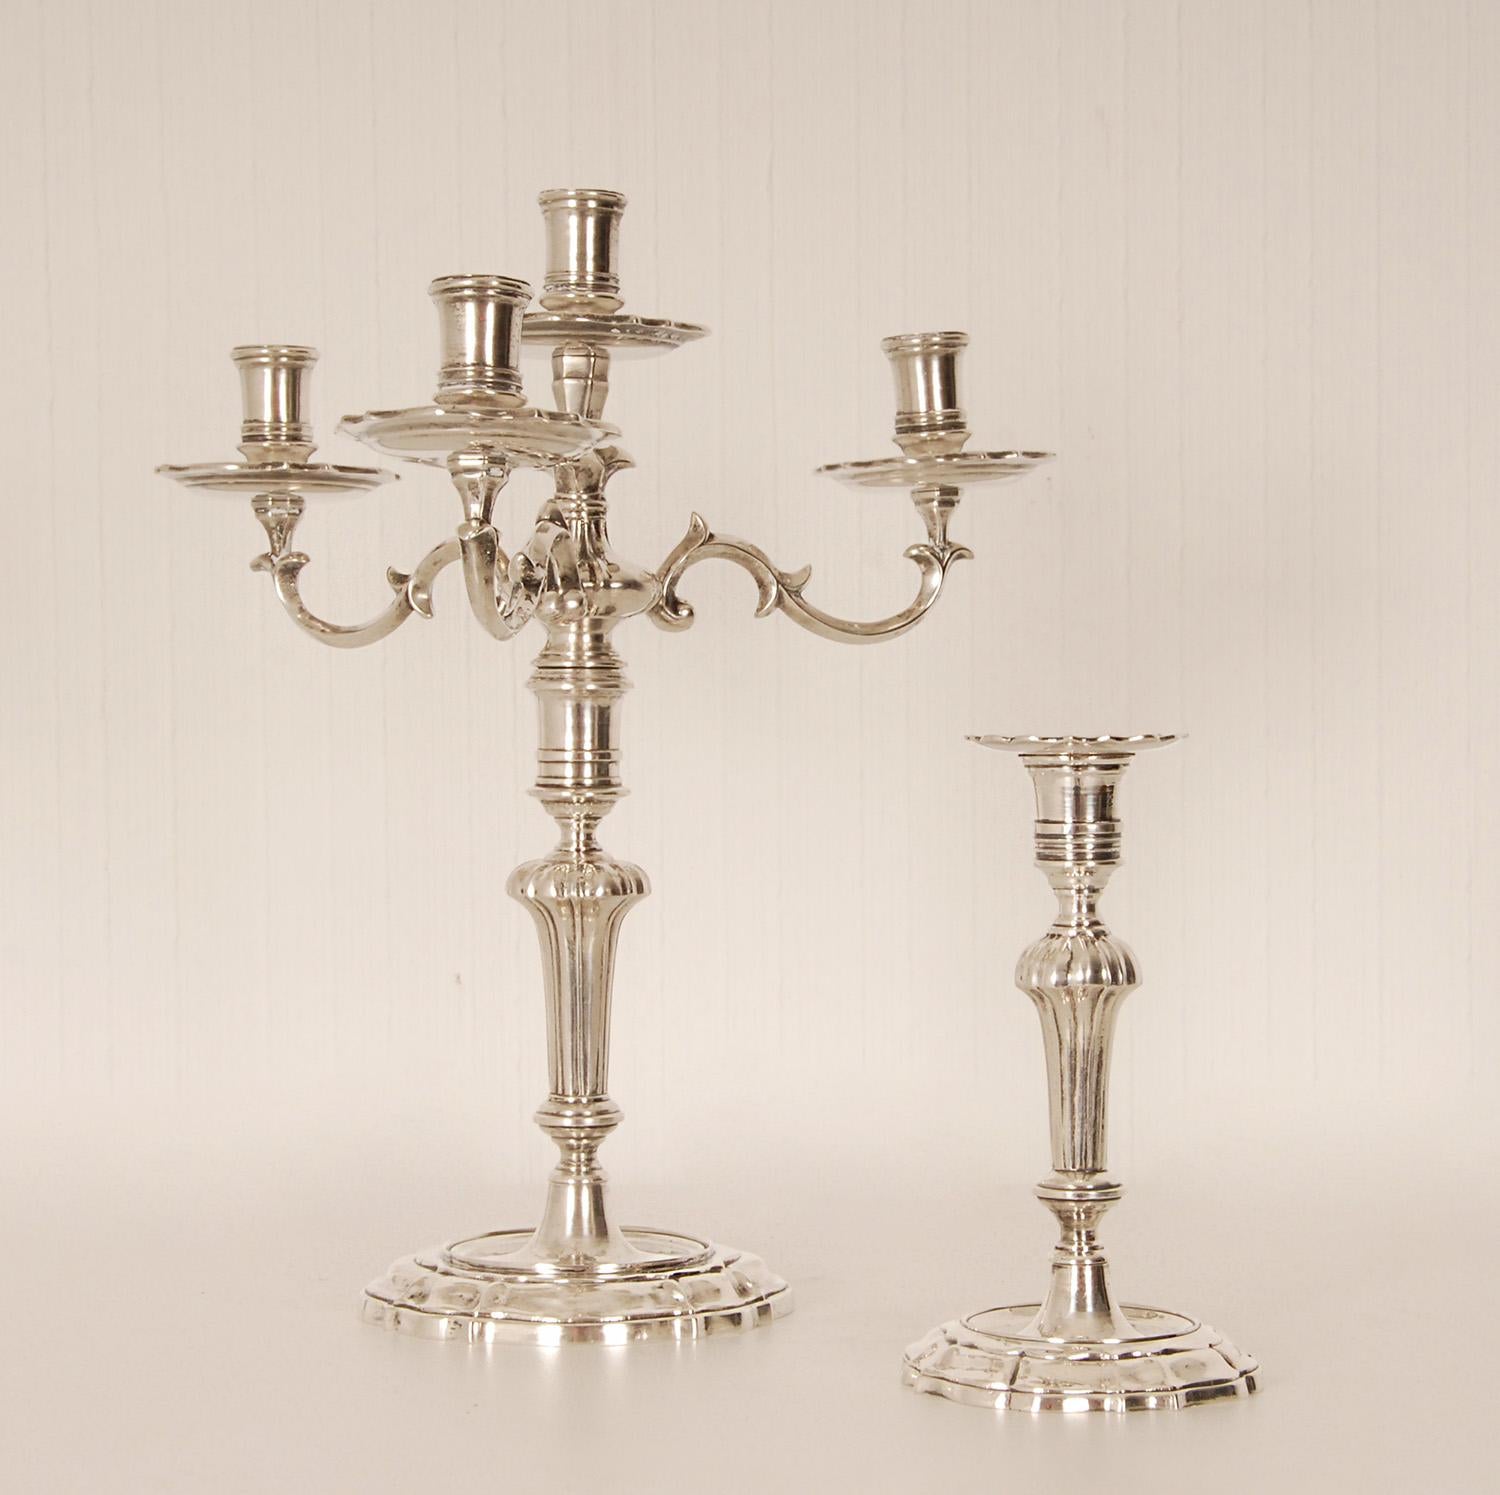 2 chandeliers italiens contemporains en argent massif chandeliers d'autel Church's
Style : Rococo, italien, antique, Louis XV, 
L'une d'entre elles peut être convertie en candélabre
Chacune sur une base circulaire façonnée, avec une tige cannelée